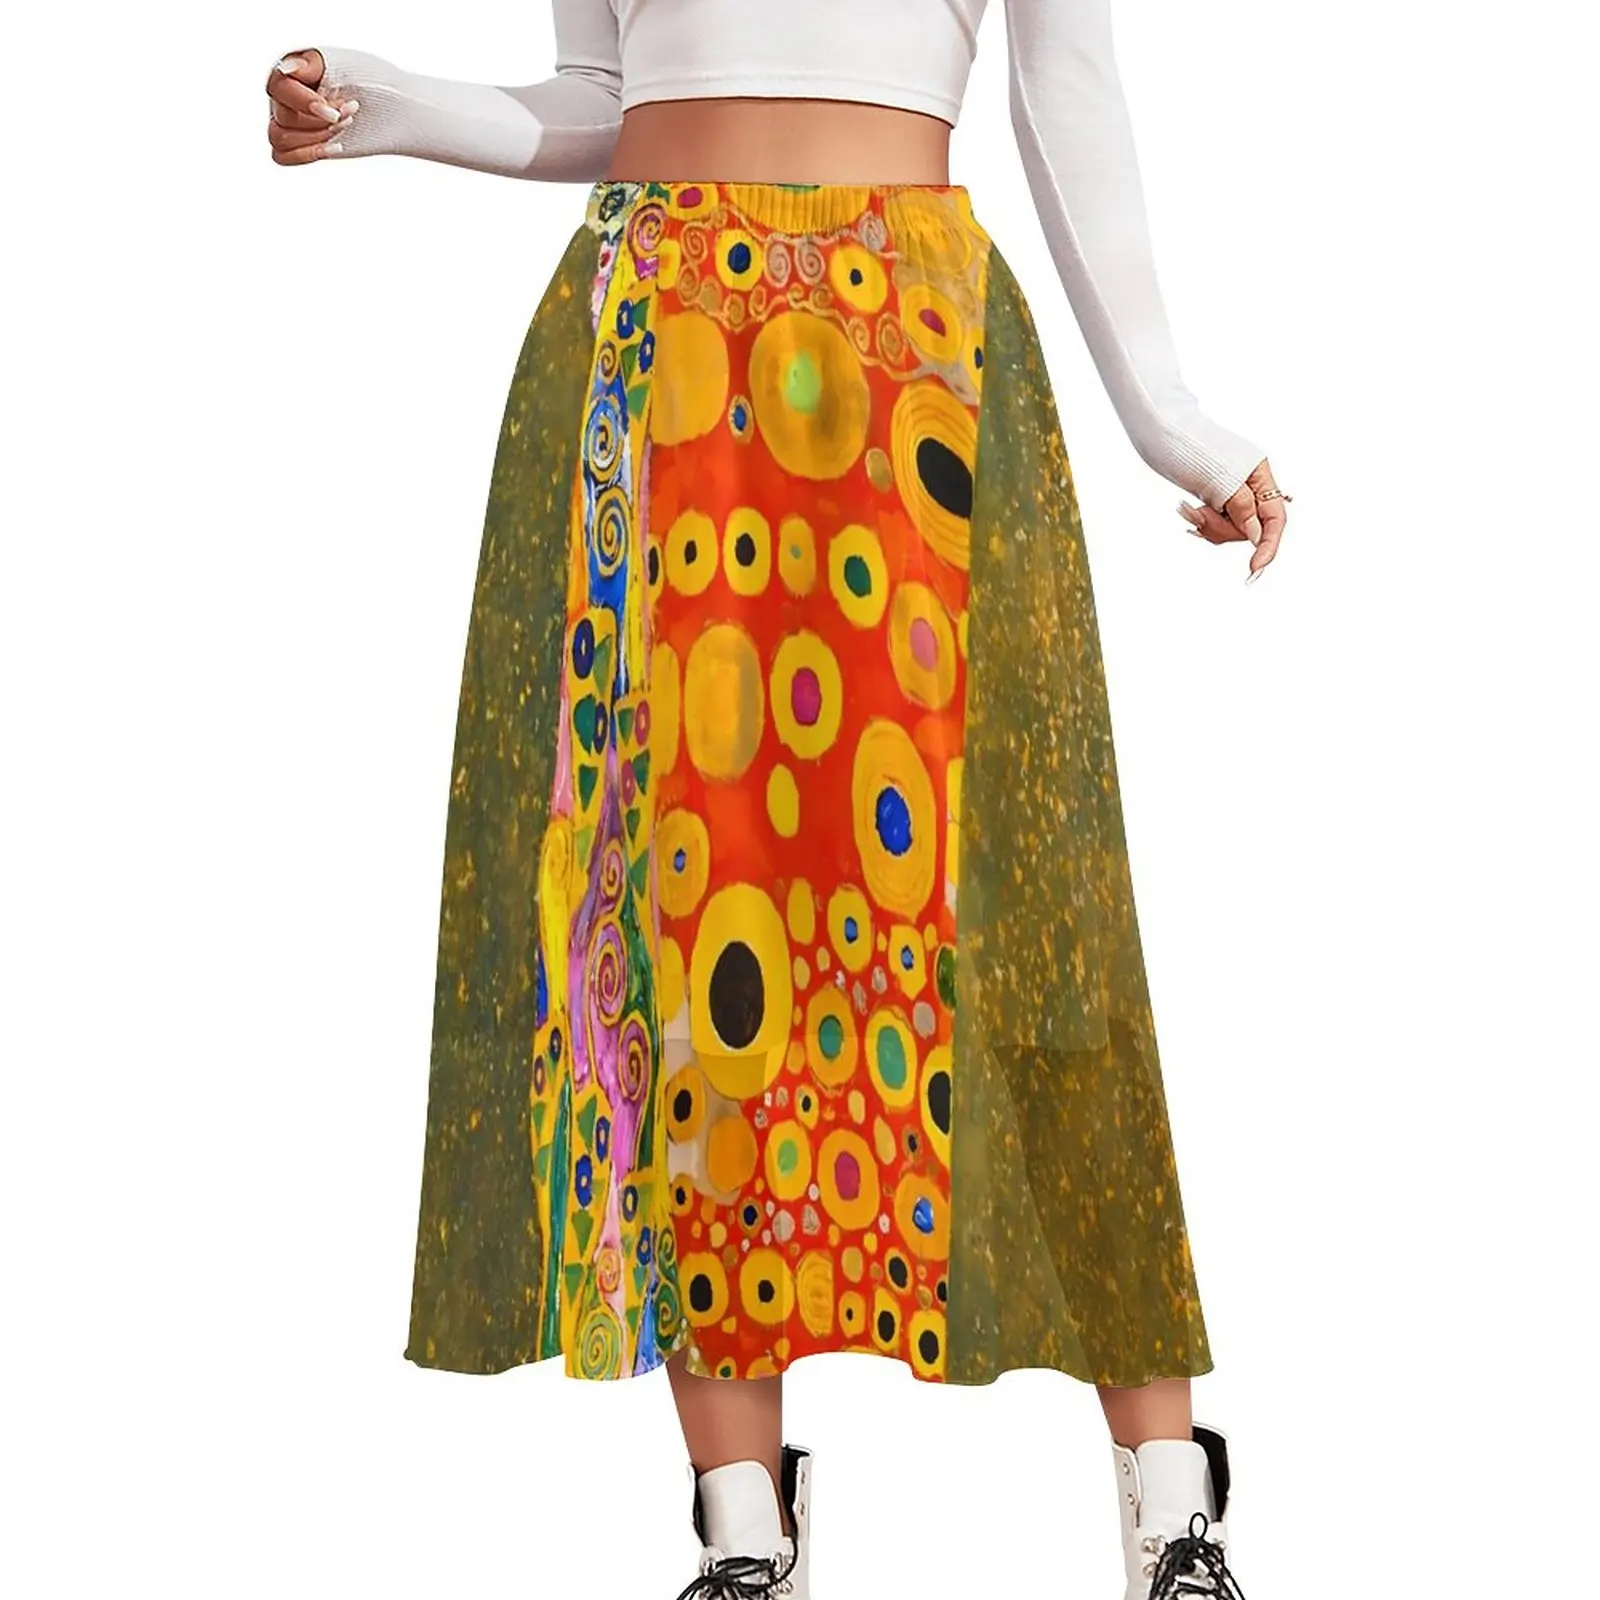 

Юбка Gustav Klimt Hope, уличная мода с абстрактным рисунком, повседневные юбки, милая трапециевидная юбка, женские юбки оверсайз с графическим прин...